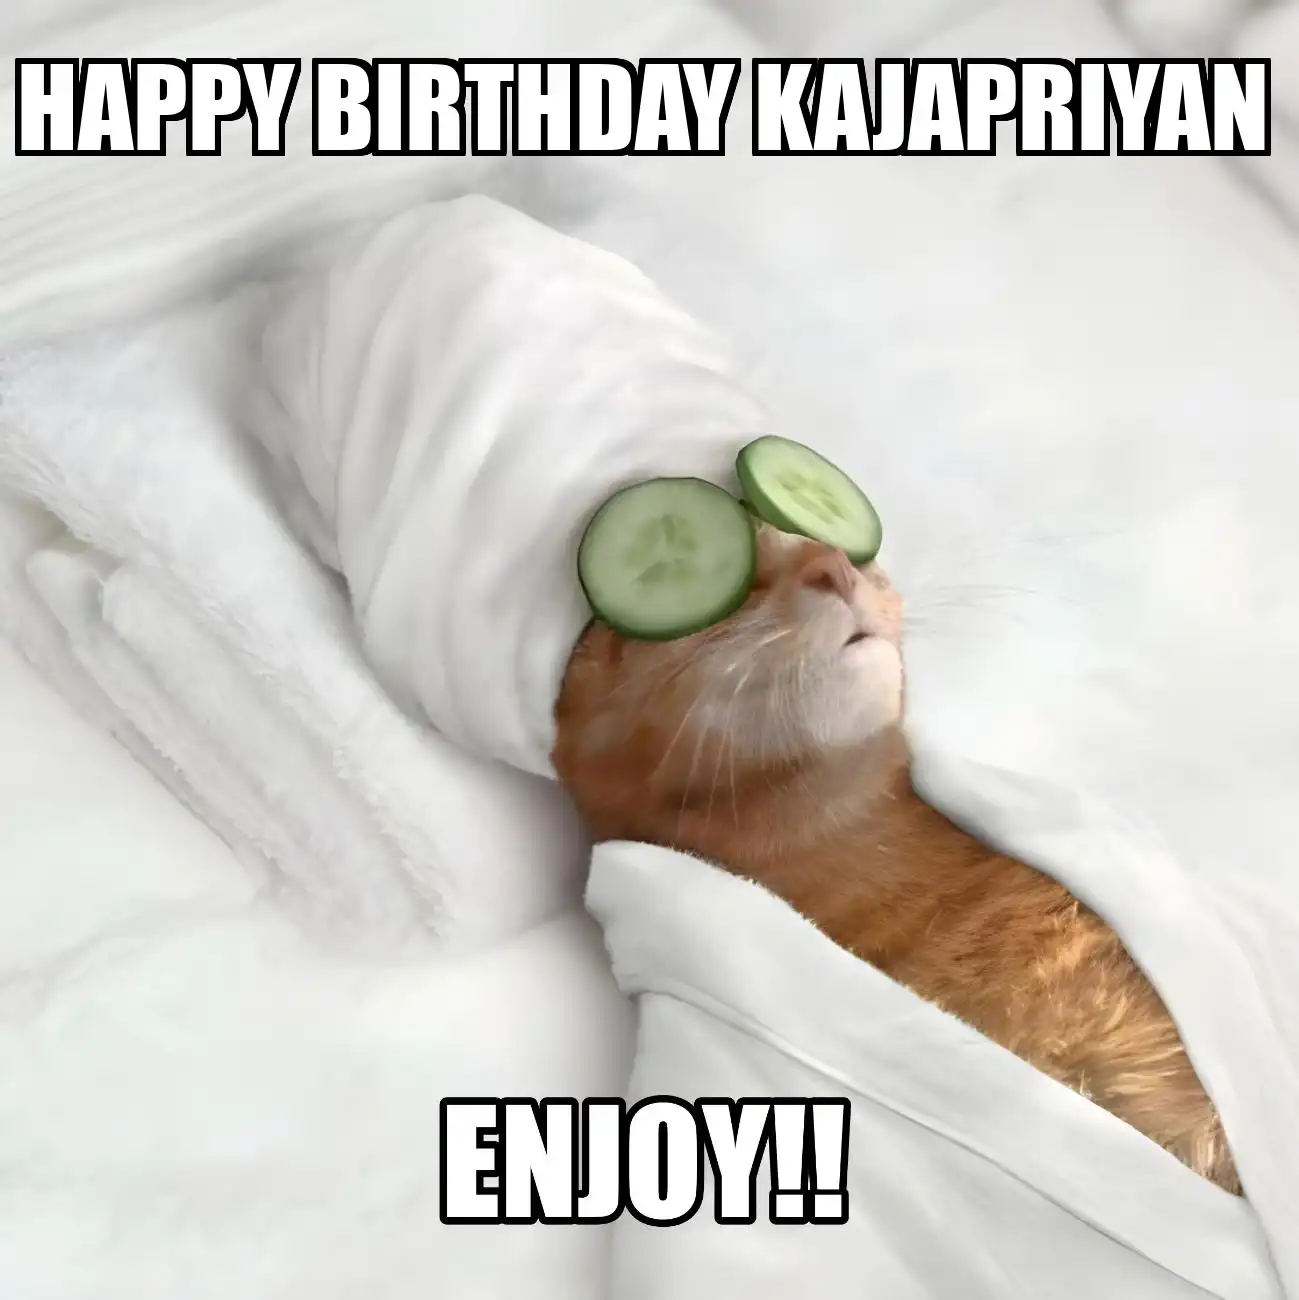 Happy Birthday Kajapriyan Enjoy Cat Meme